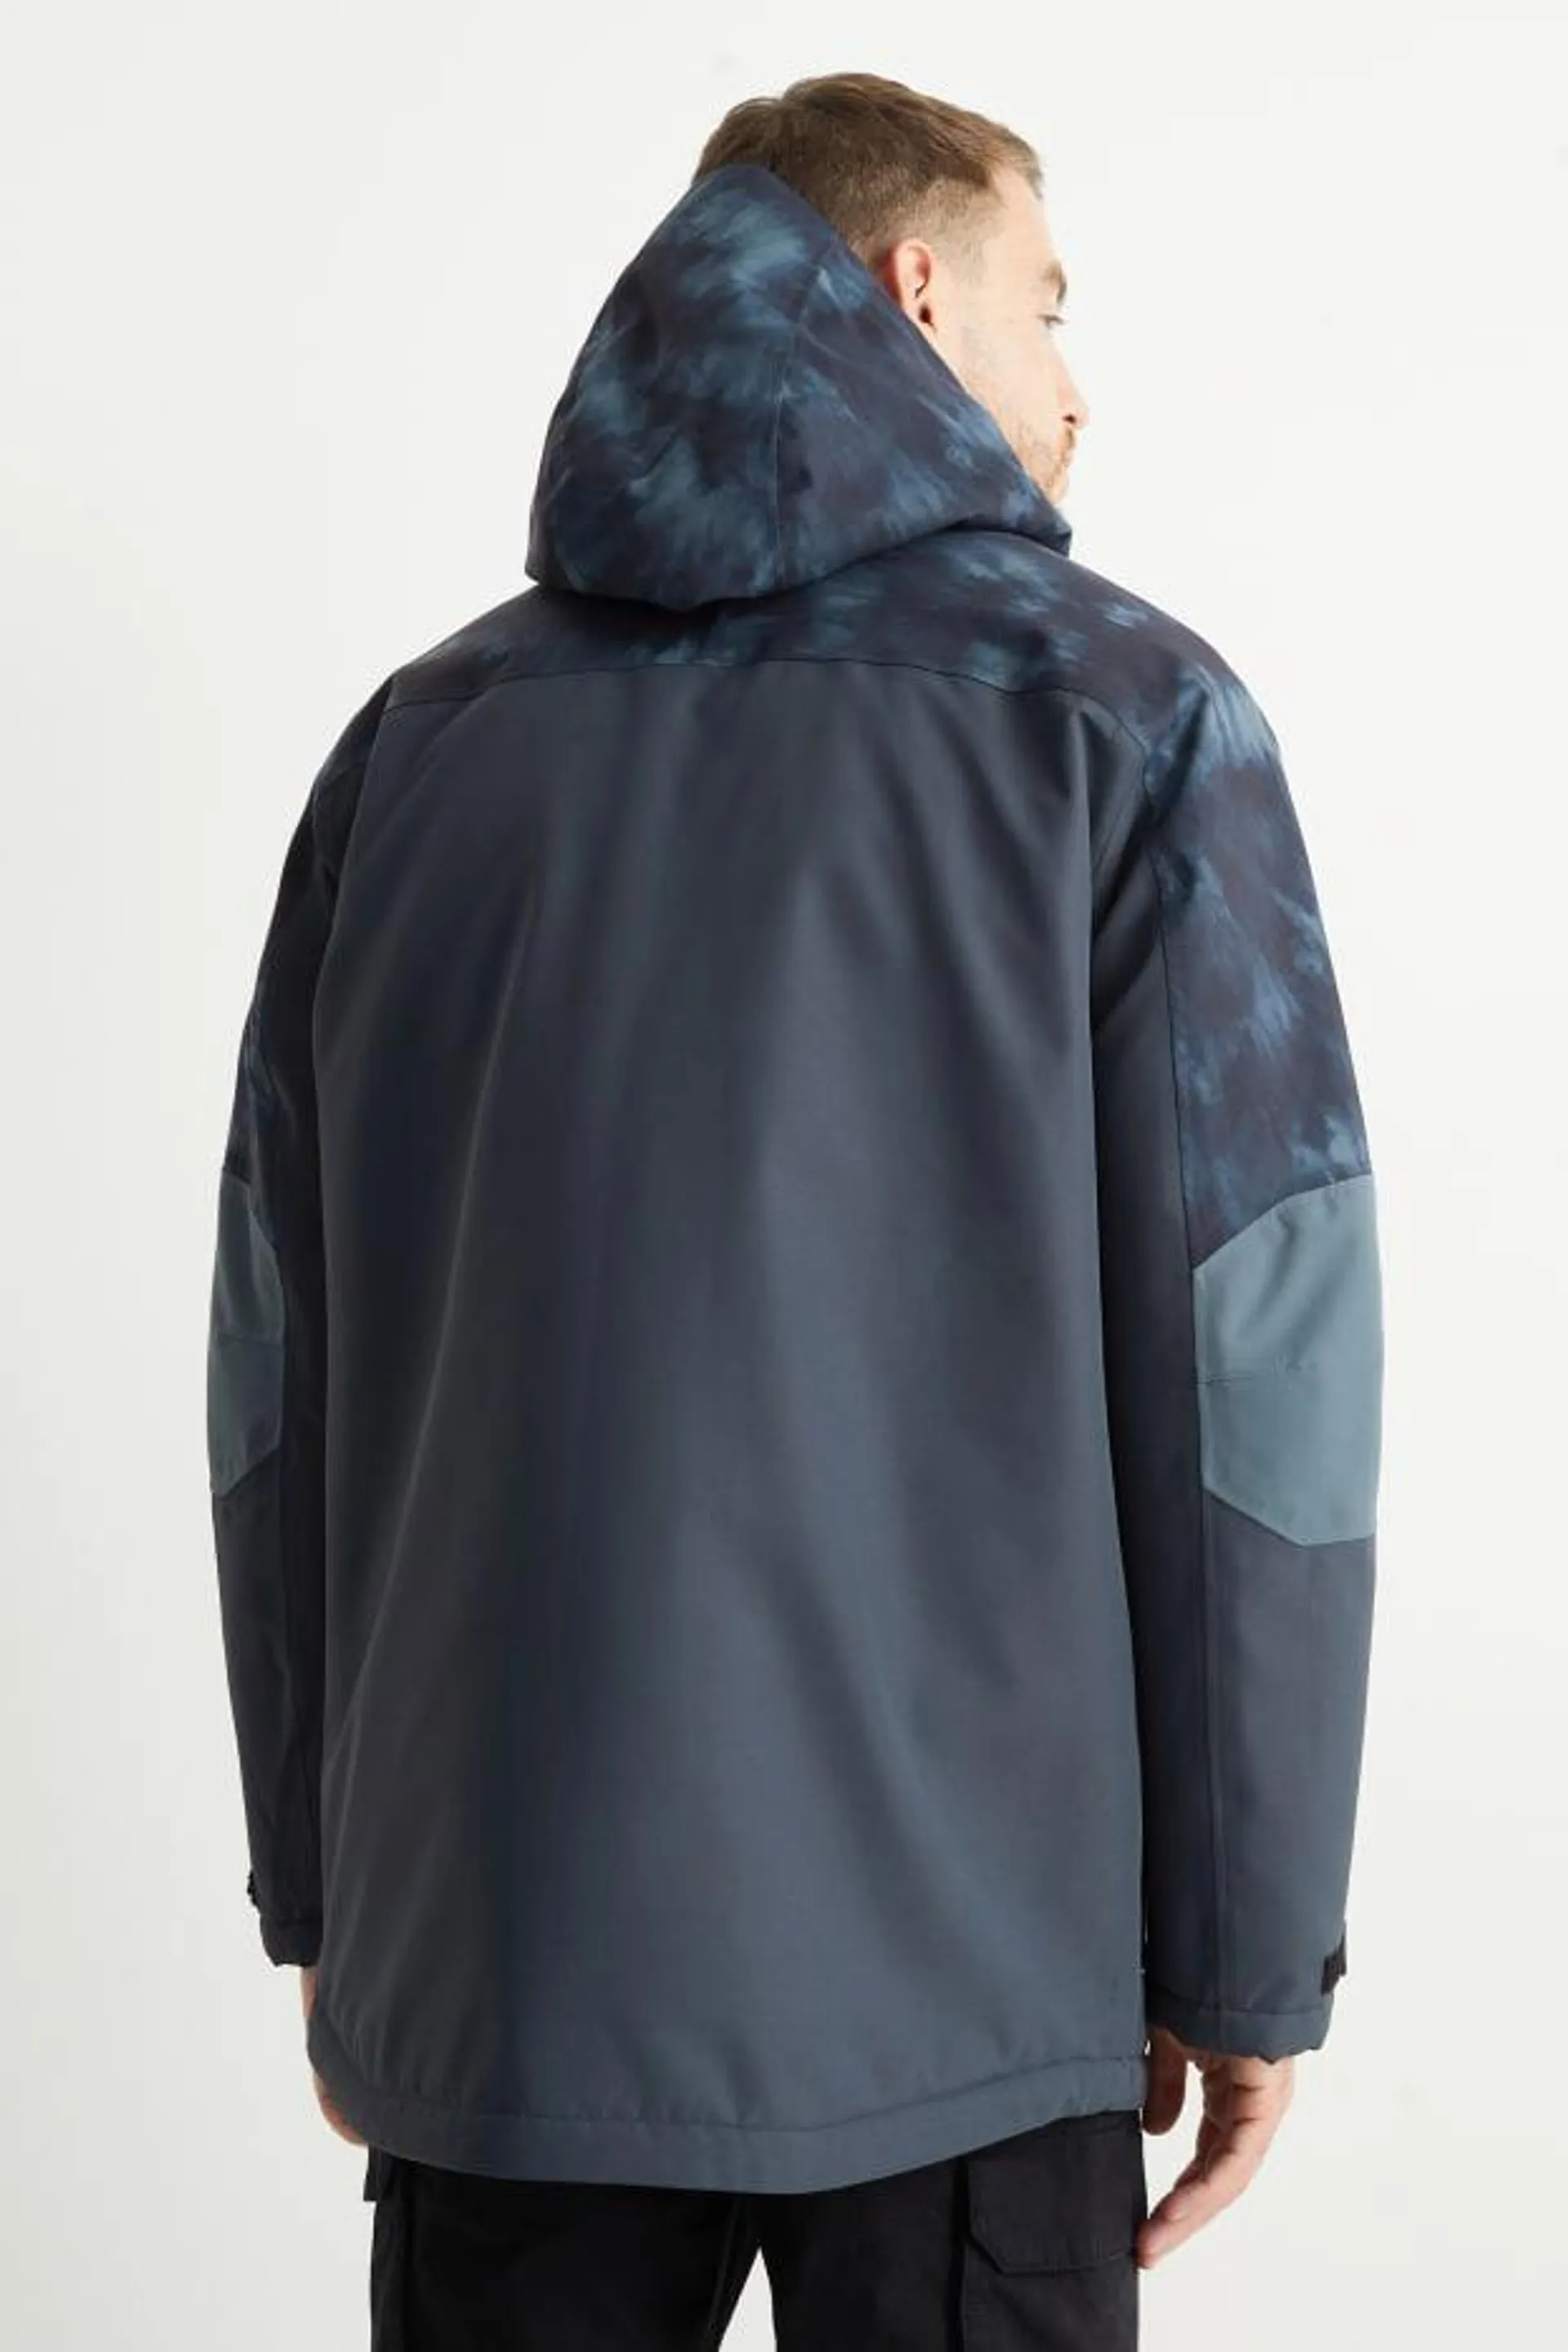 Outdoor jacket with hood - waterproof